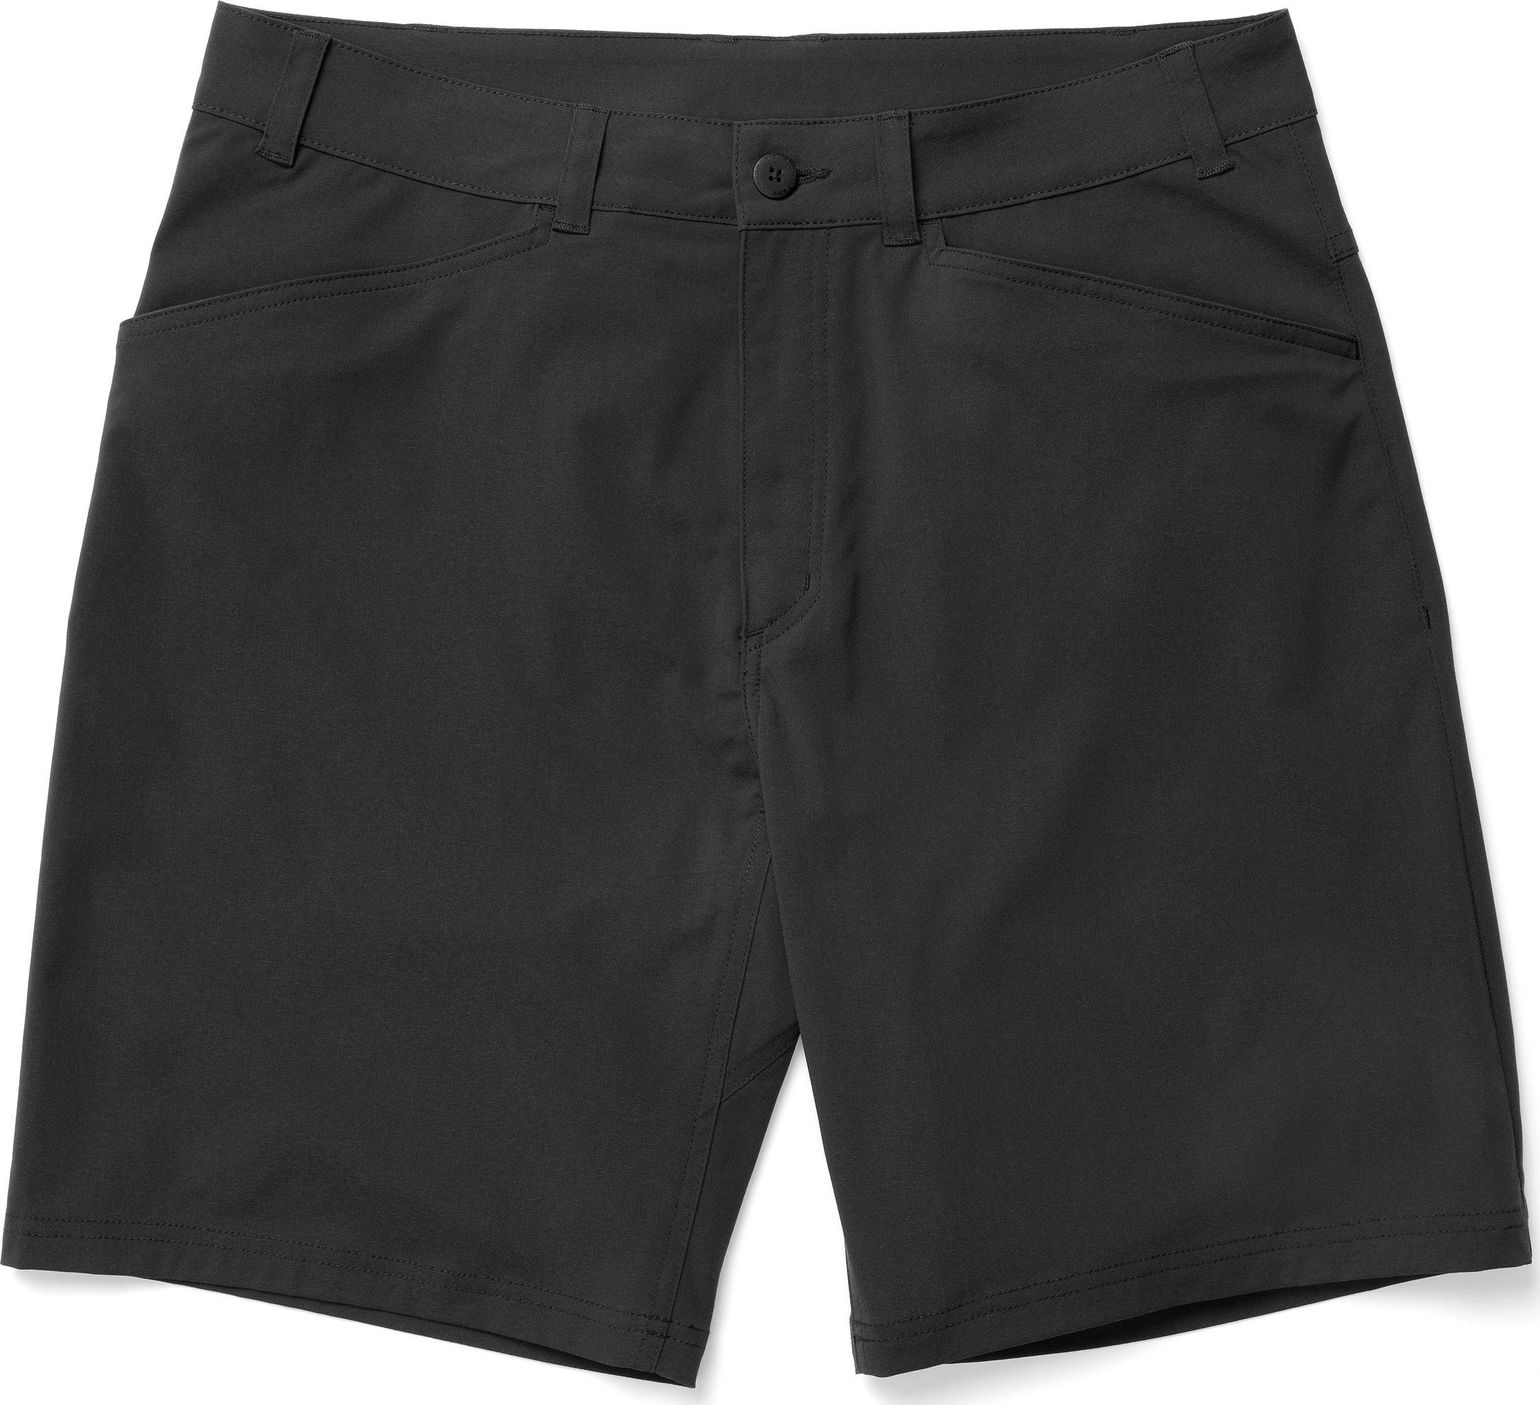 Men's Dock Shorts true black